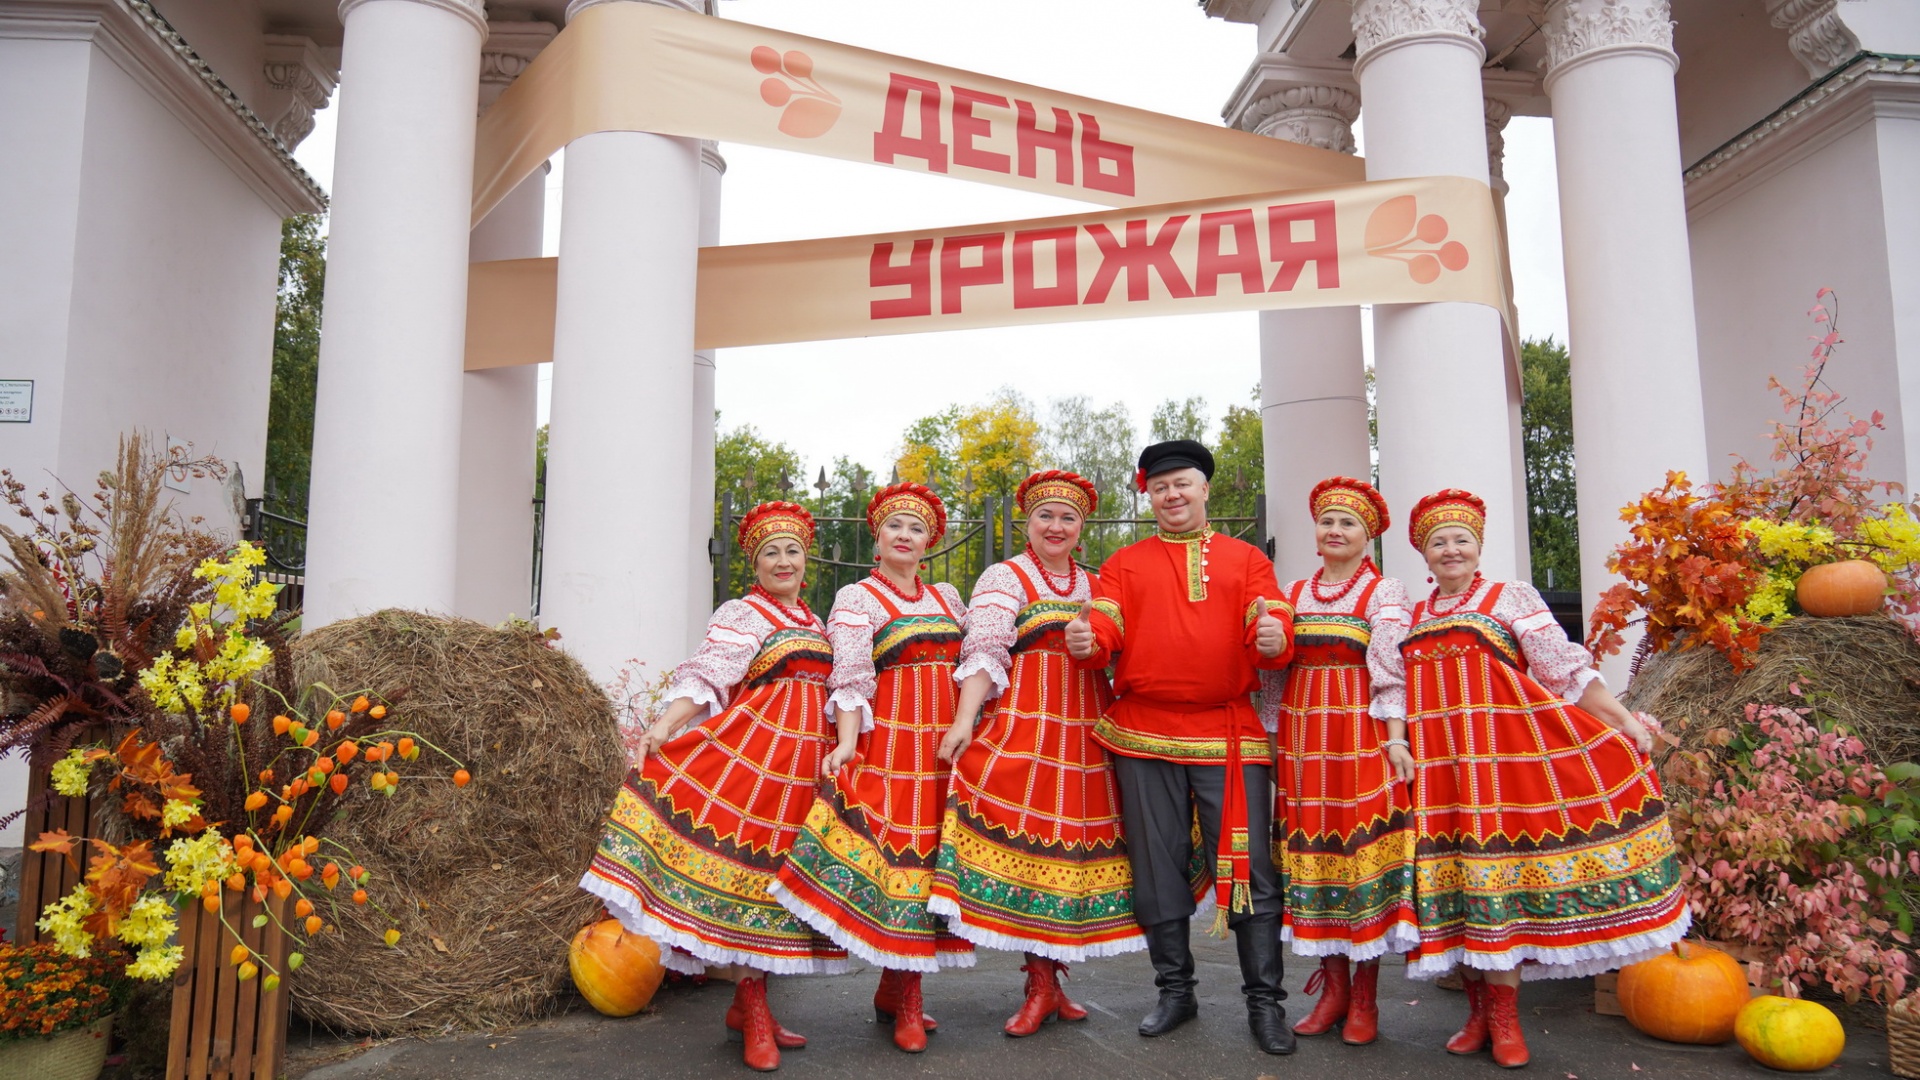 Рекордный сбор урожая в Ивановской области отметили фестивалем "День урожая"